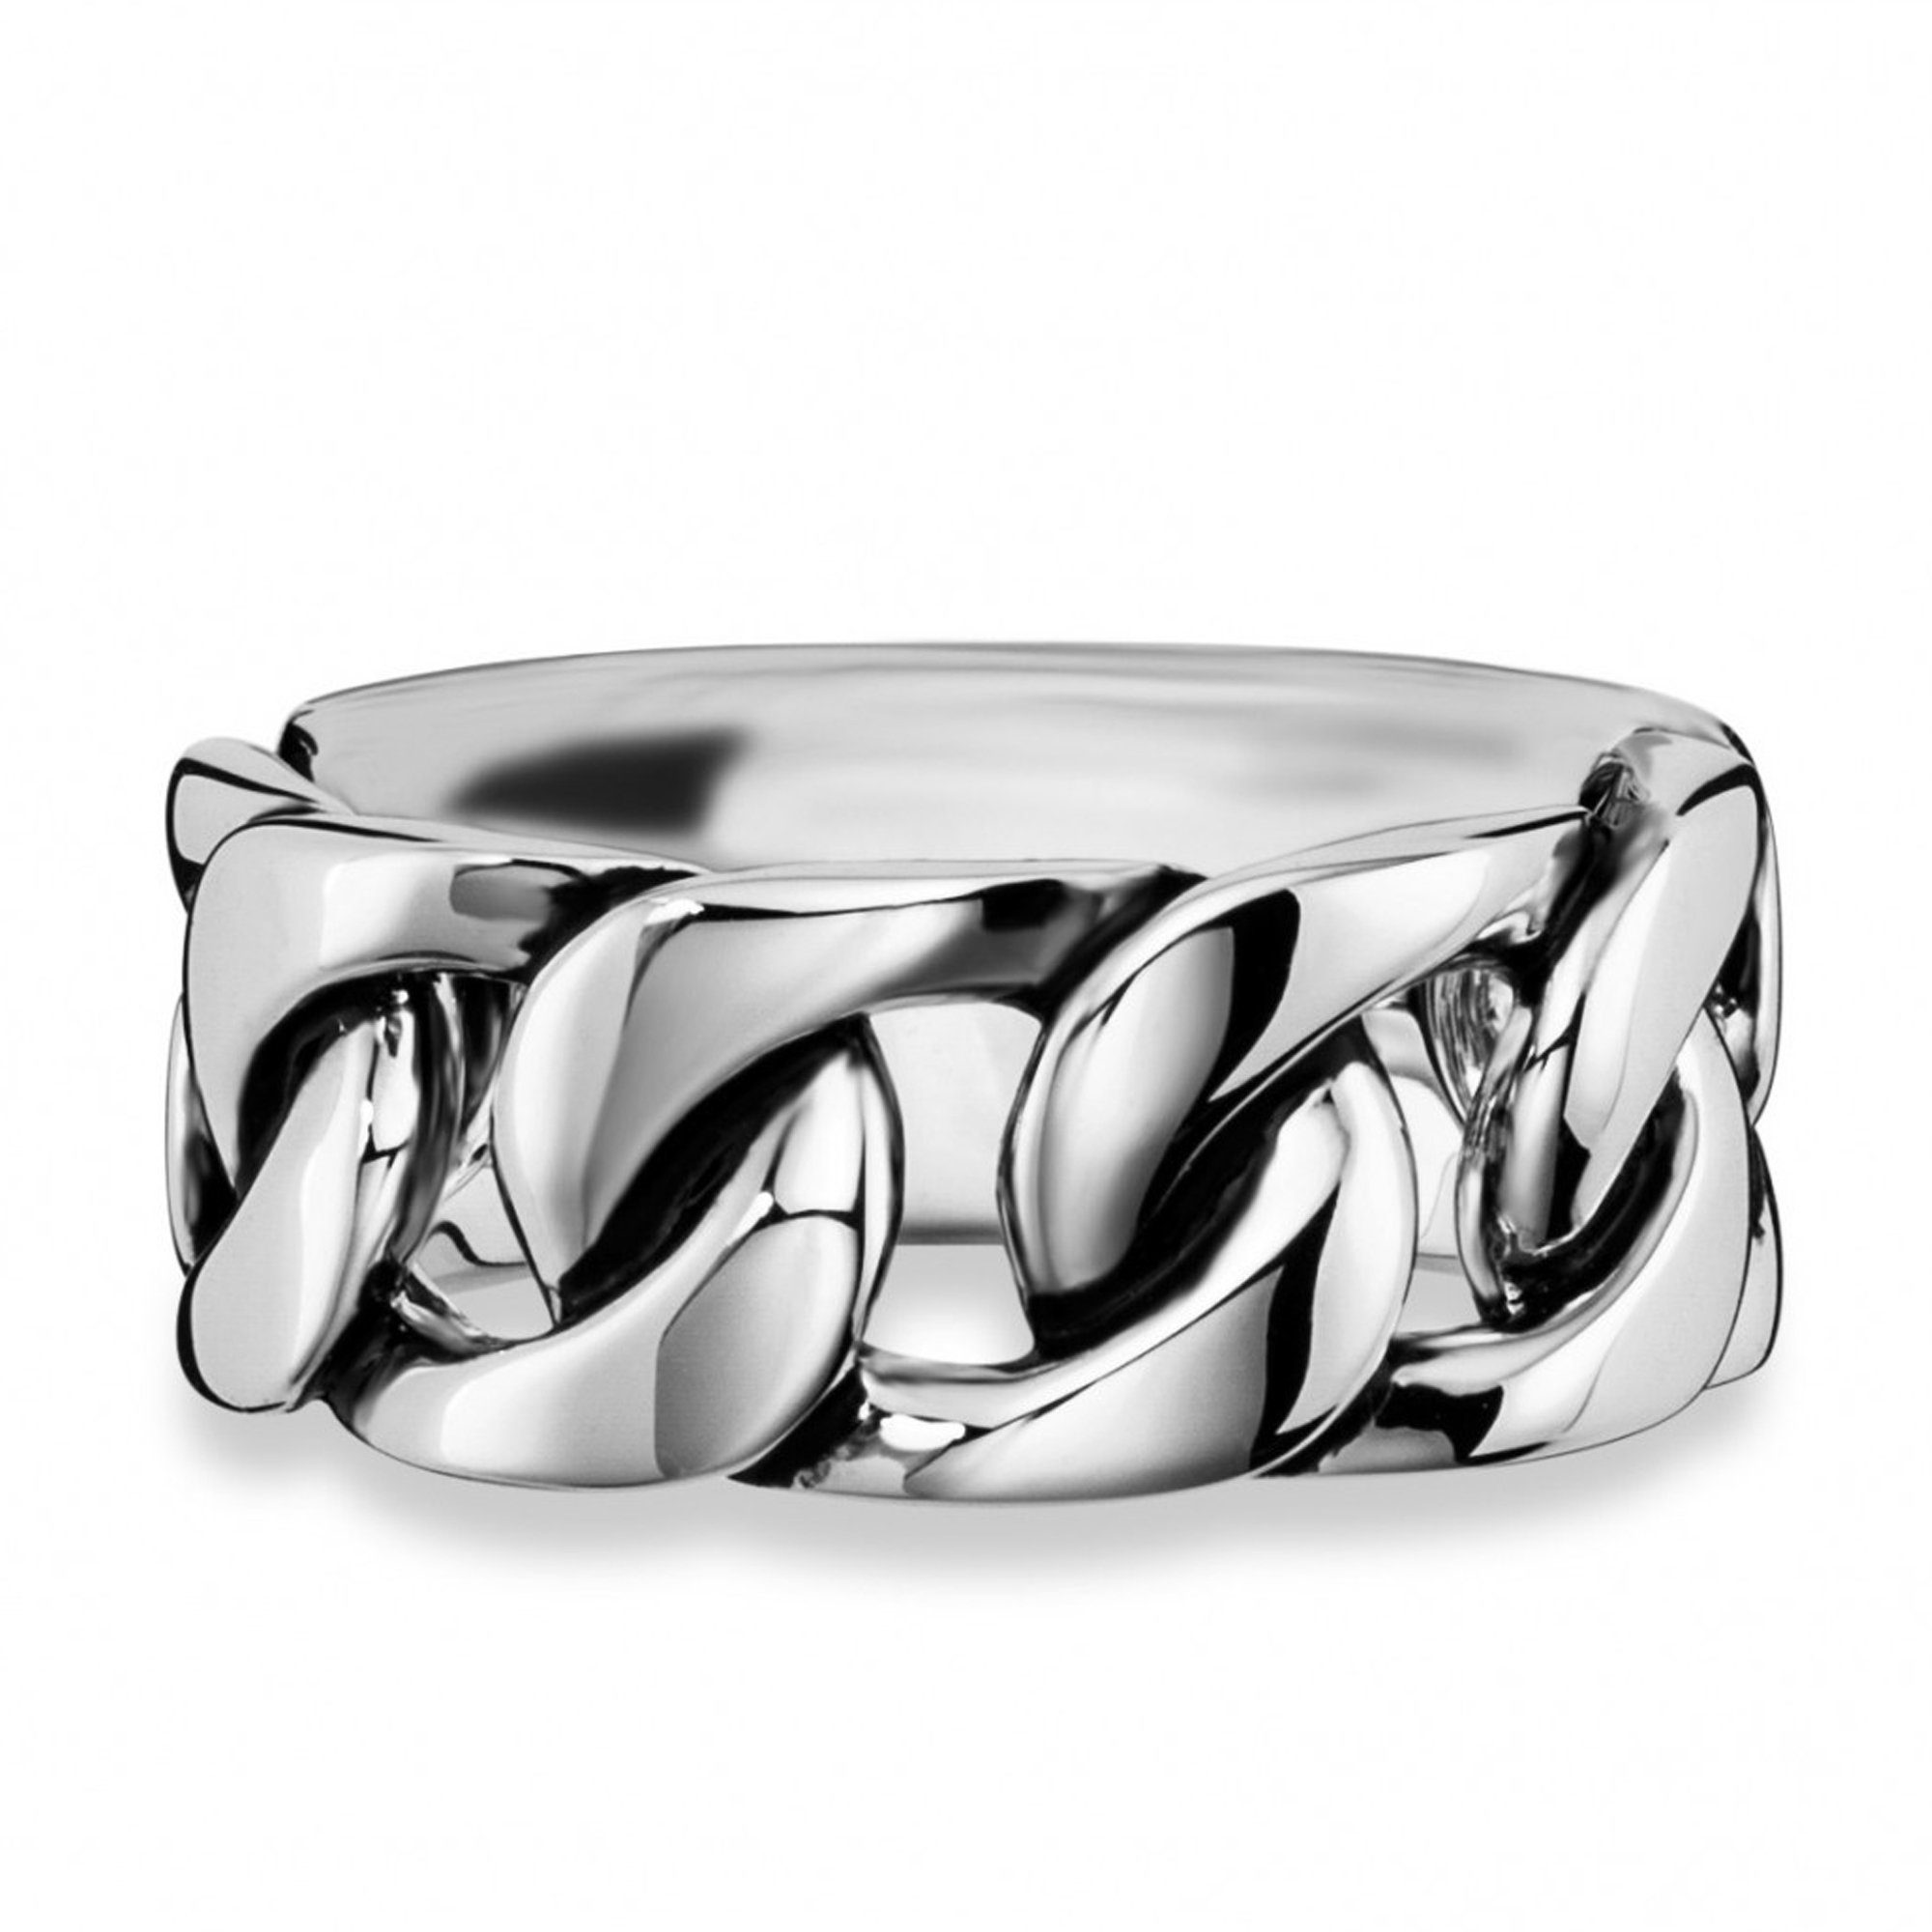 CAÏ Fingerring 925/- Sterling Silber rhodiniert Ketten-Optik | Silberringe